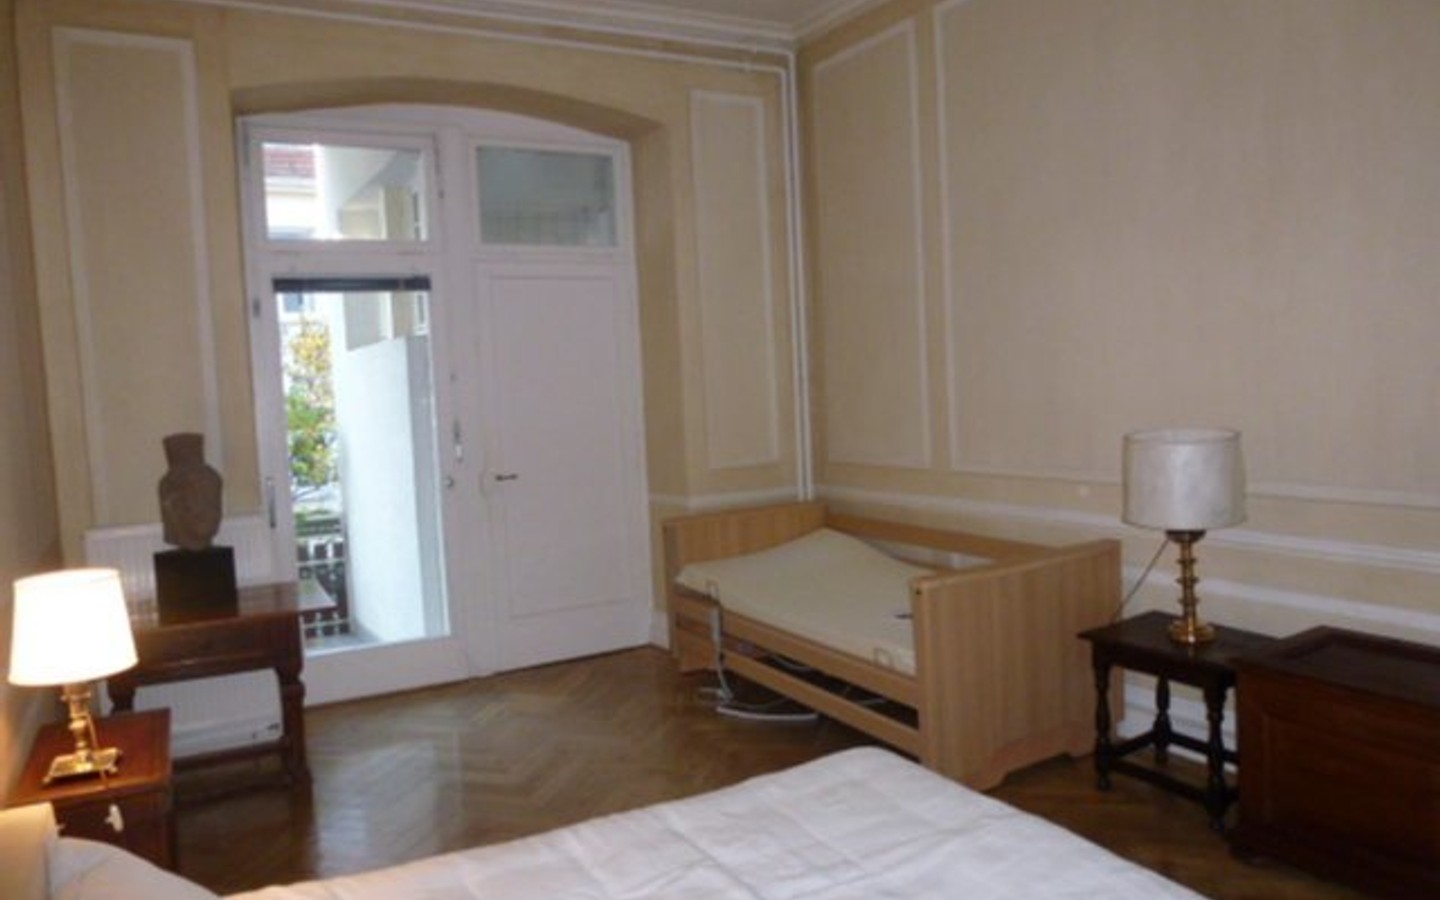 Schlafzimmer mit Bad und Balkon - Top 5 Zimmer Wohnung Heidelberg/Altstadt/Bienenstrasse, 165 m²,  1. OG, in sehr gepflegtem Stadthaus.